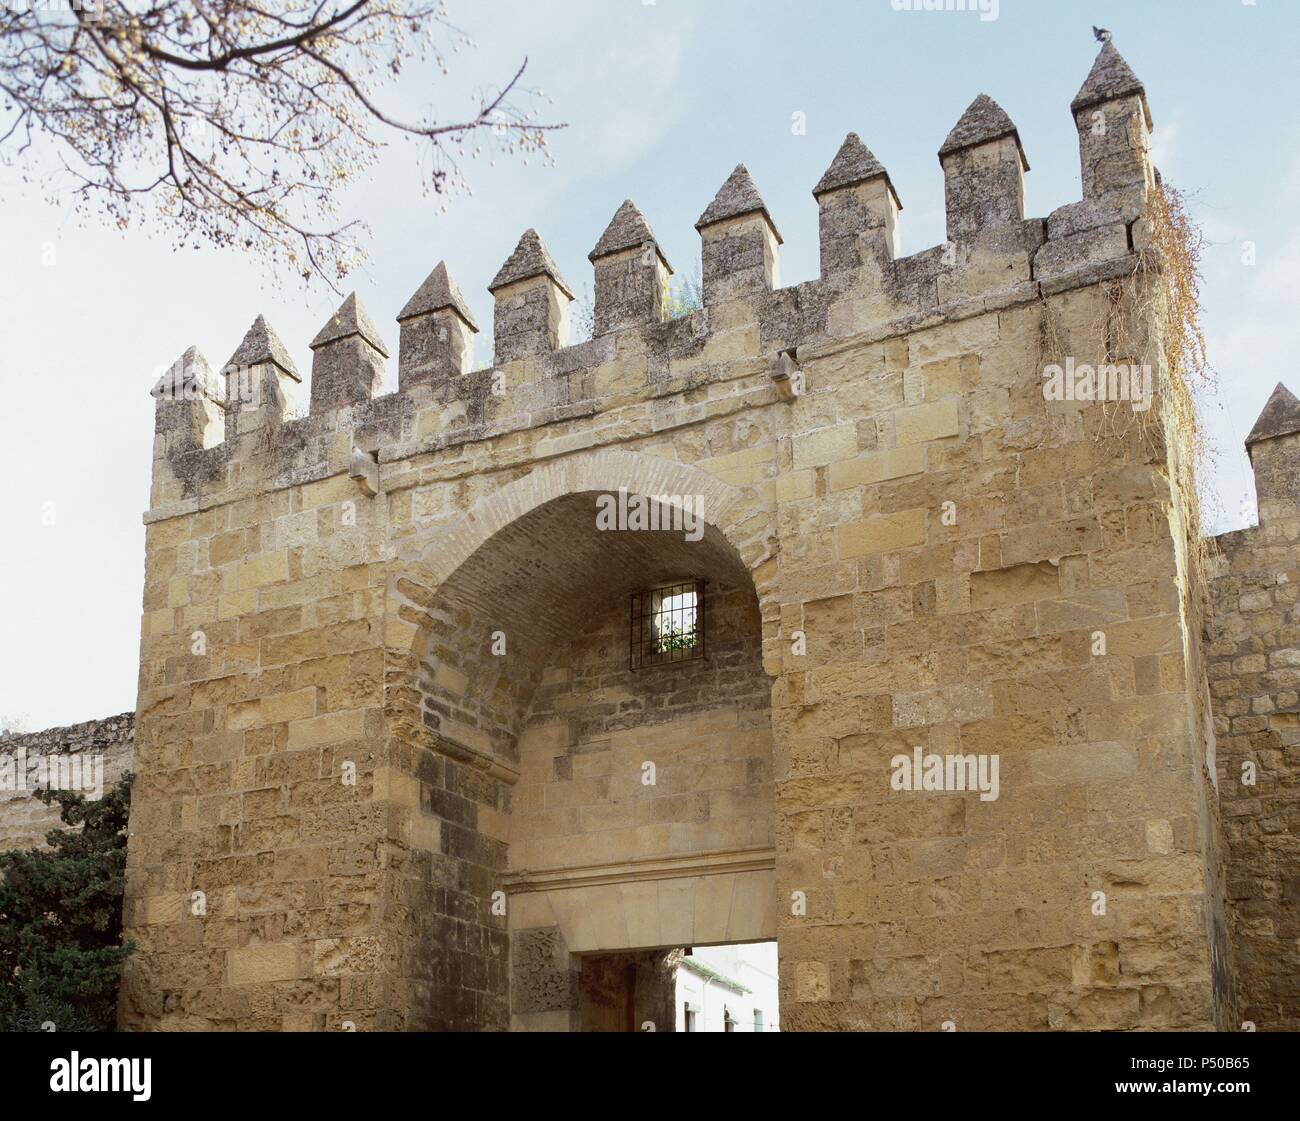 Andalusia. CORDOBA. Vista parcial de la Puerta de Almodovar, coronada por almenas escalonadas e incorporada en la Muralla árabe. Condurre al antiguo barrio judío o judería. España. Foto Stock